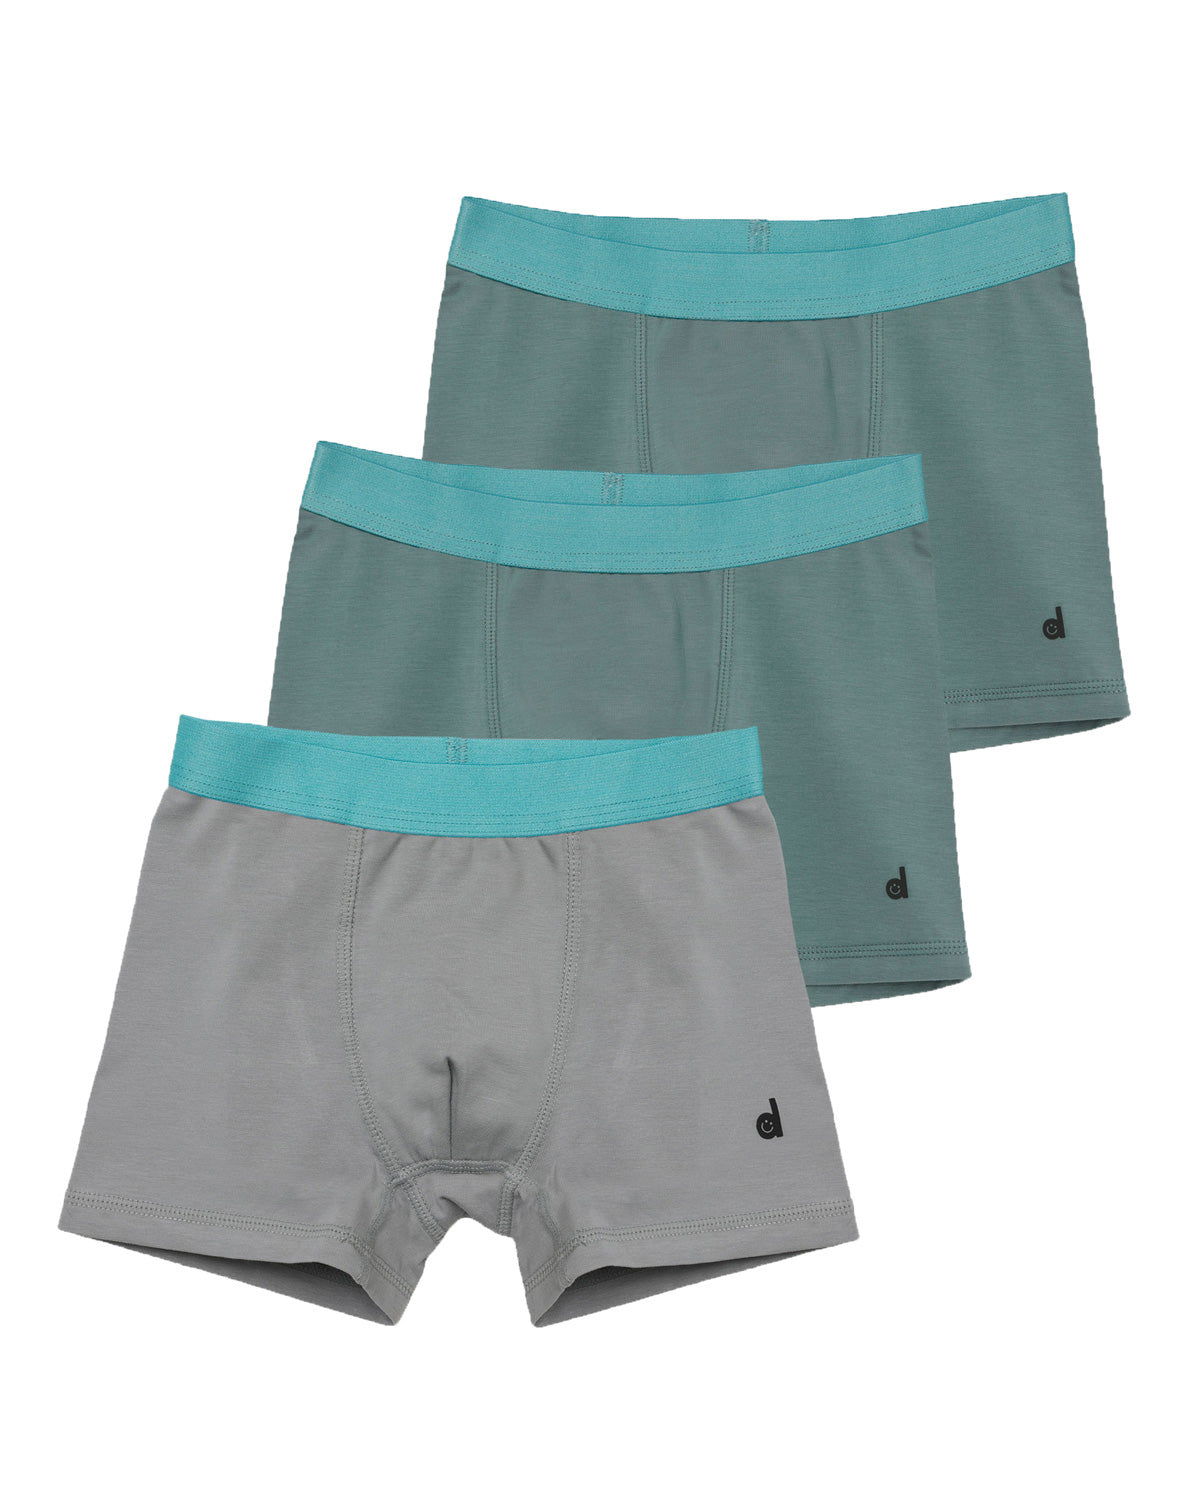 Child Underwear Sizes 1-12 Years Kid Underwear Toddler Underwear Undies  Scrundies Childrens Pre-teen 